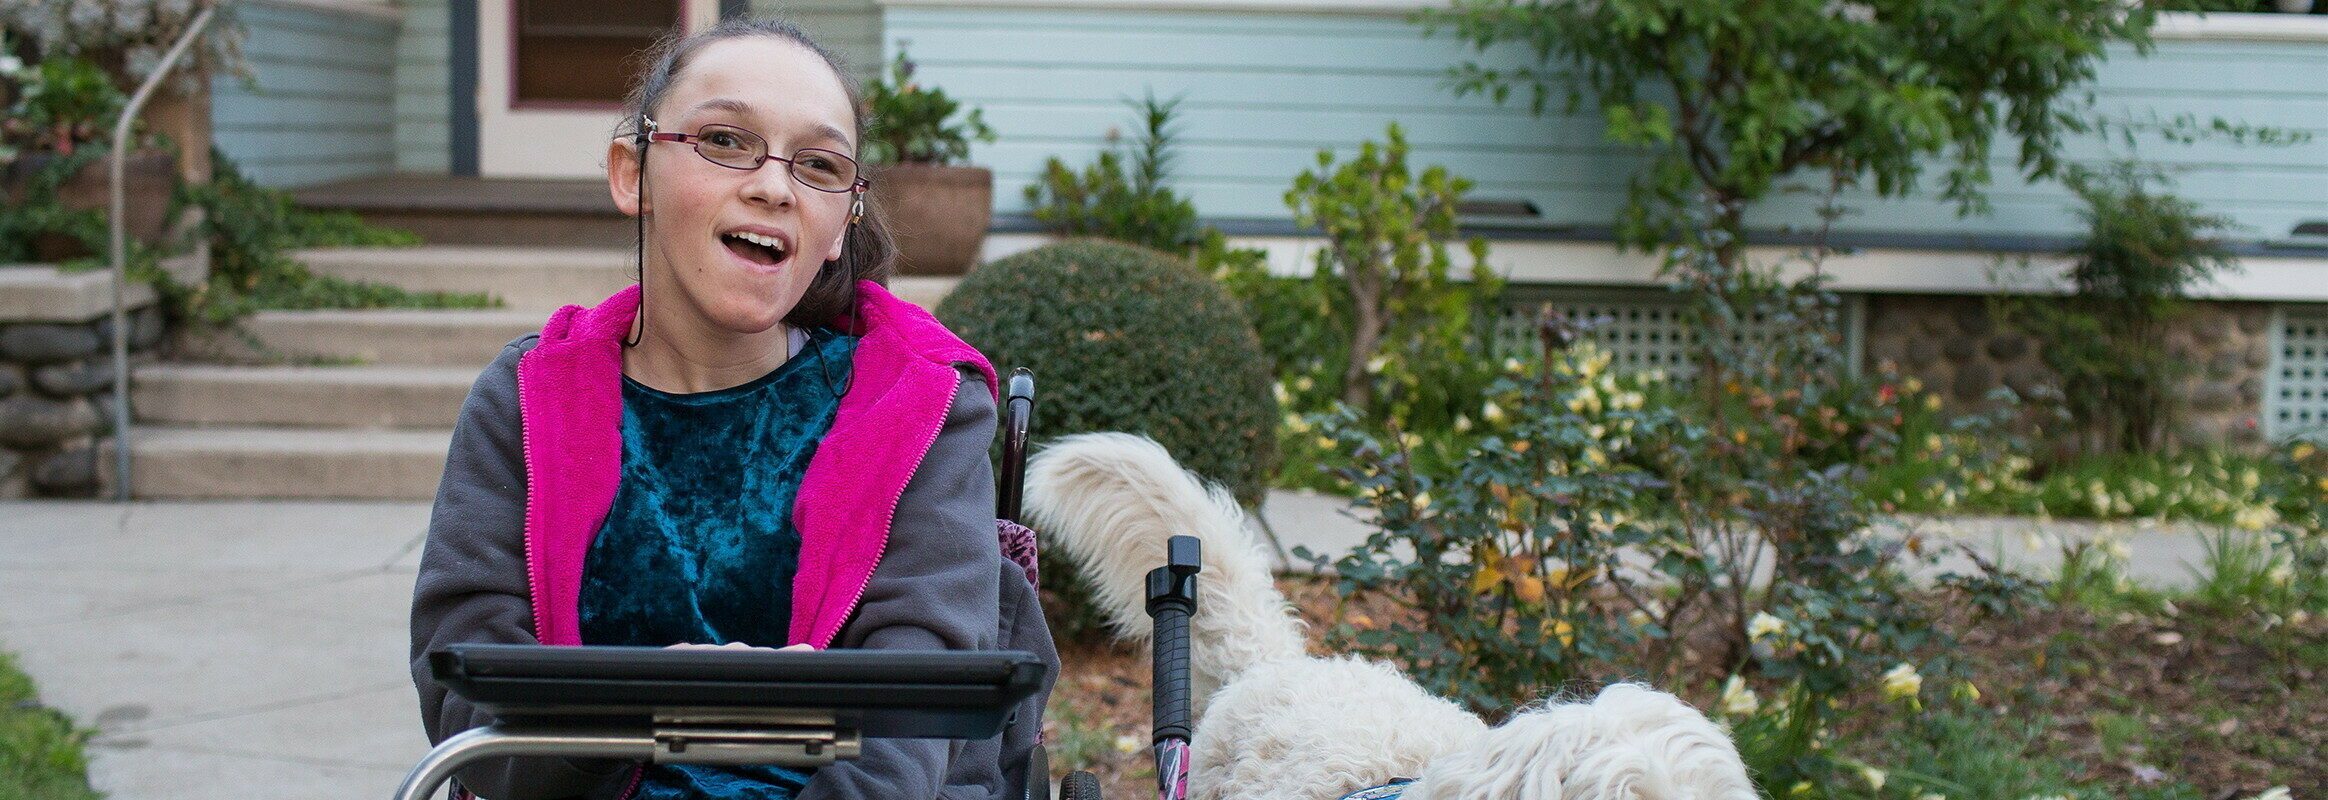 Elina, une femme blanche en fauteuil roulant avec un iPad et un chien à ses côtés